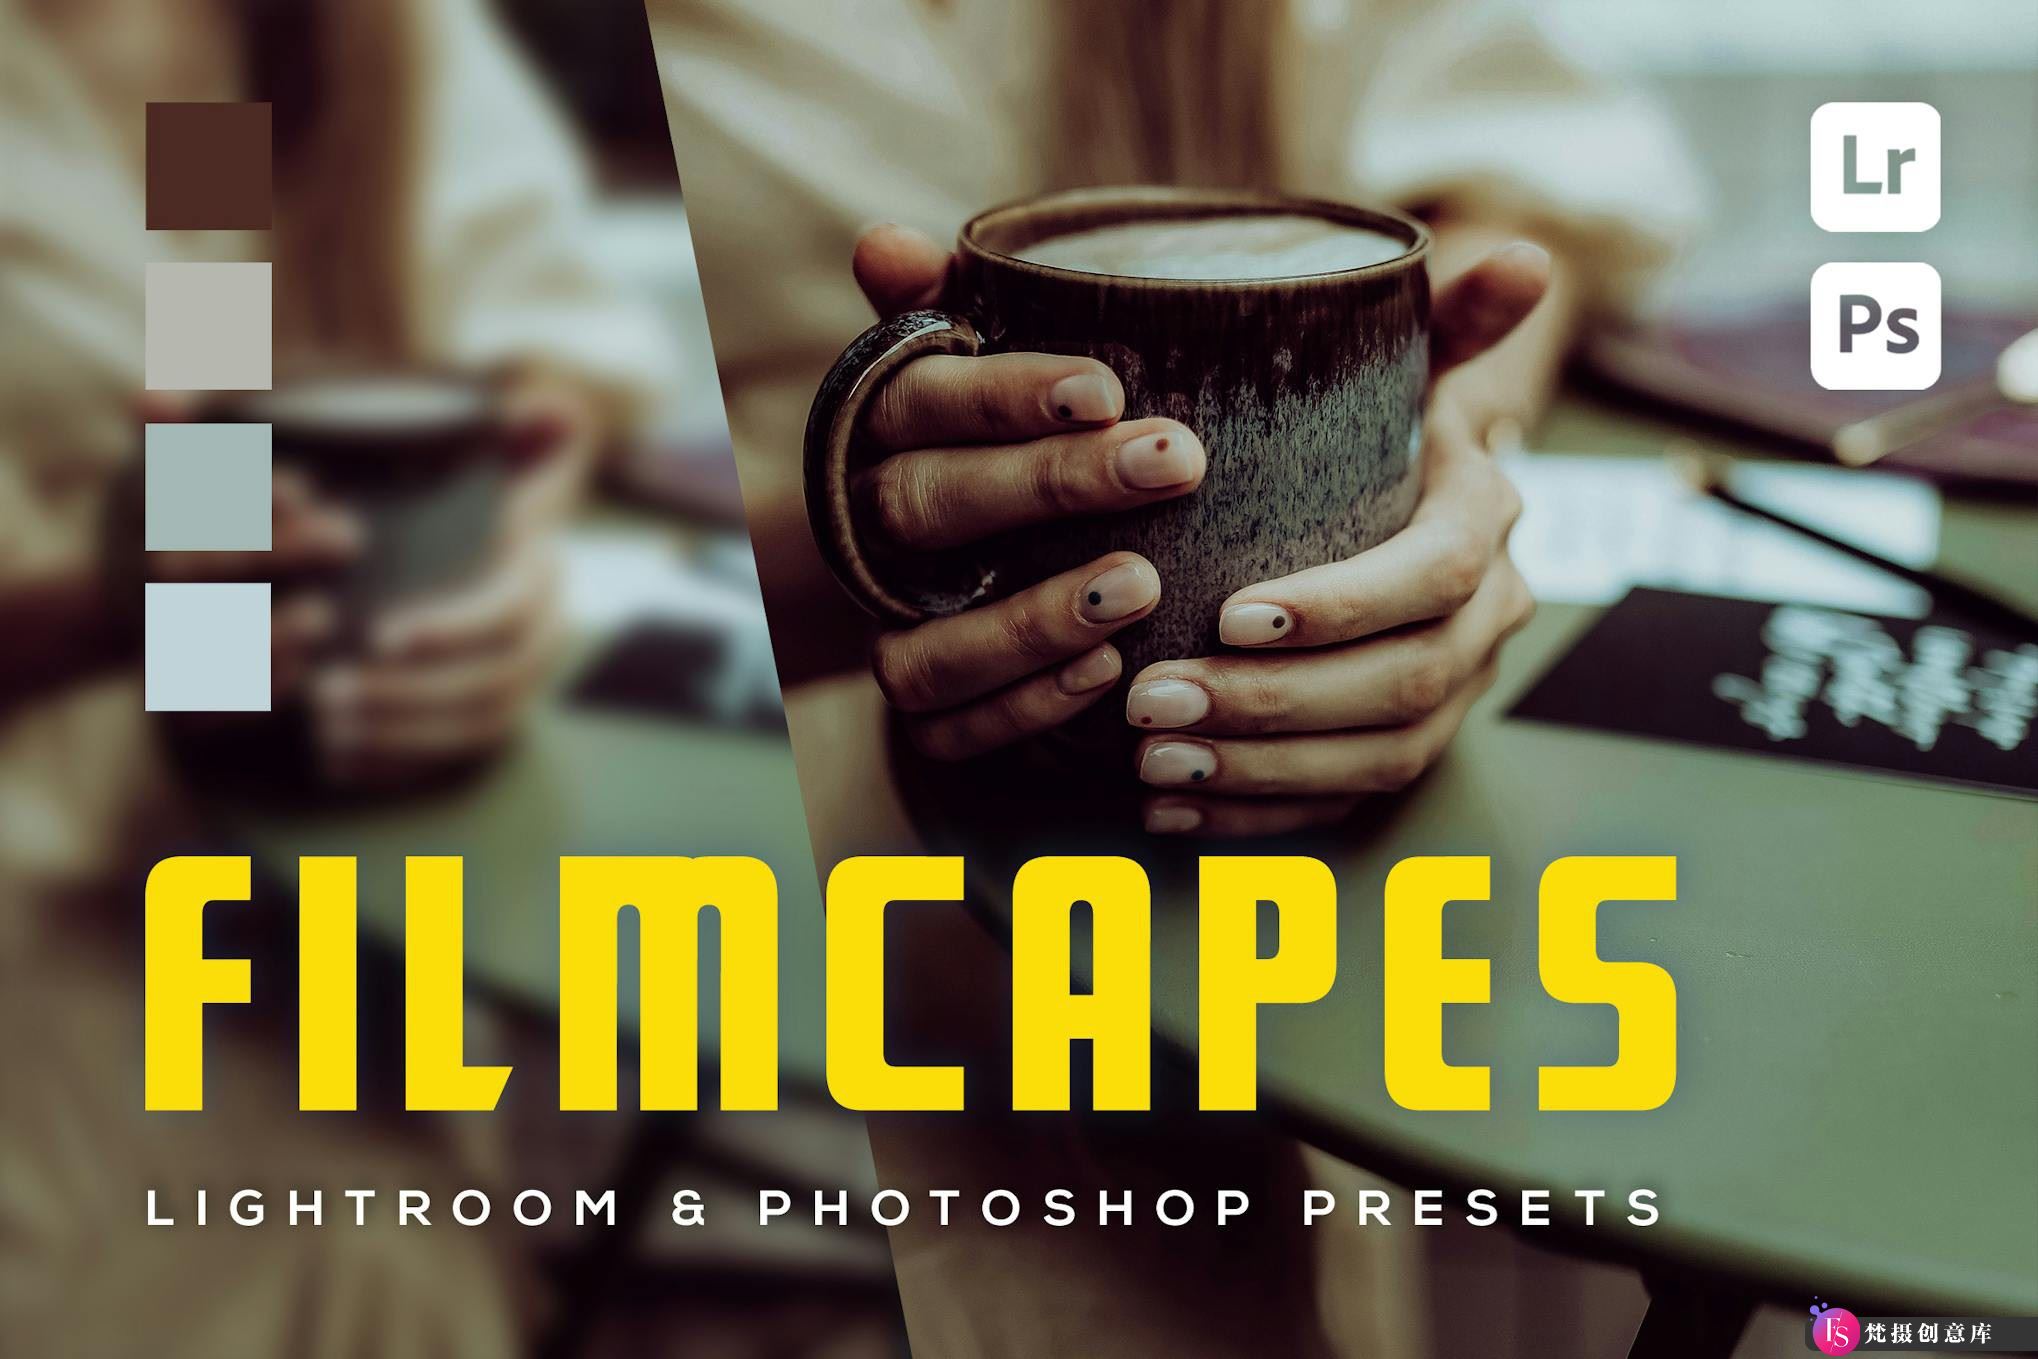 6种咖啡色调LR预设 Filmcapes LR预设-梵摄创意库